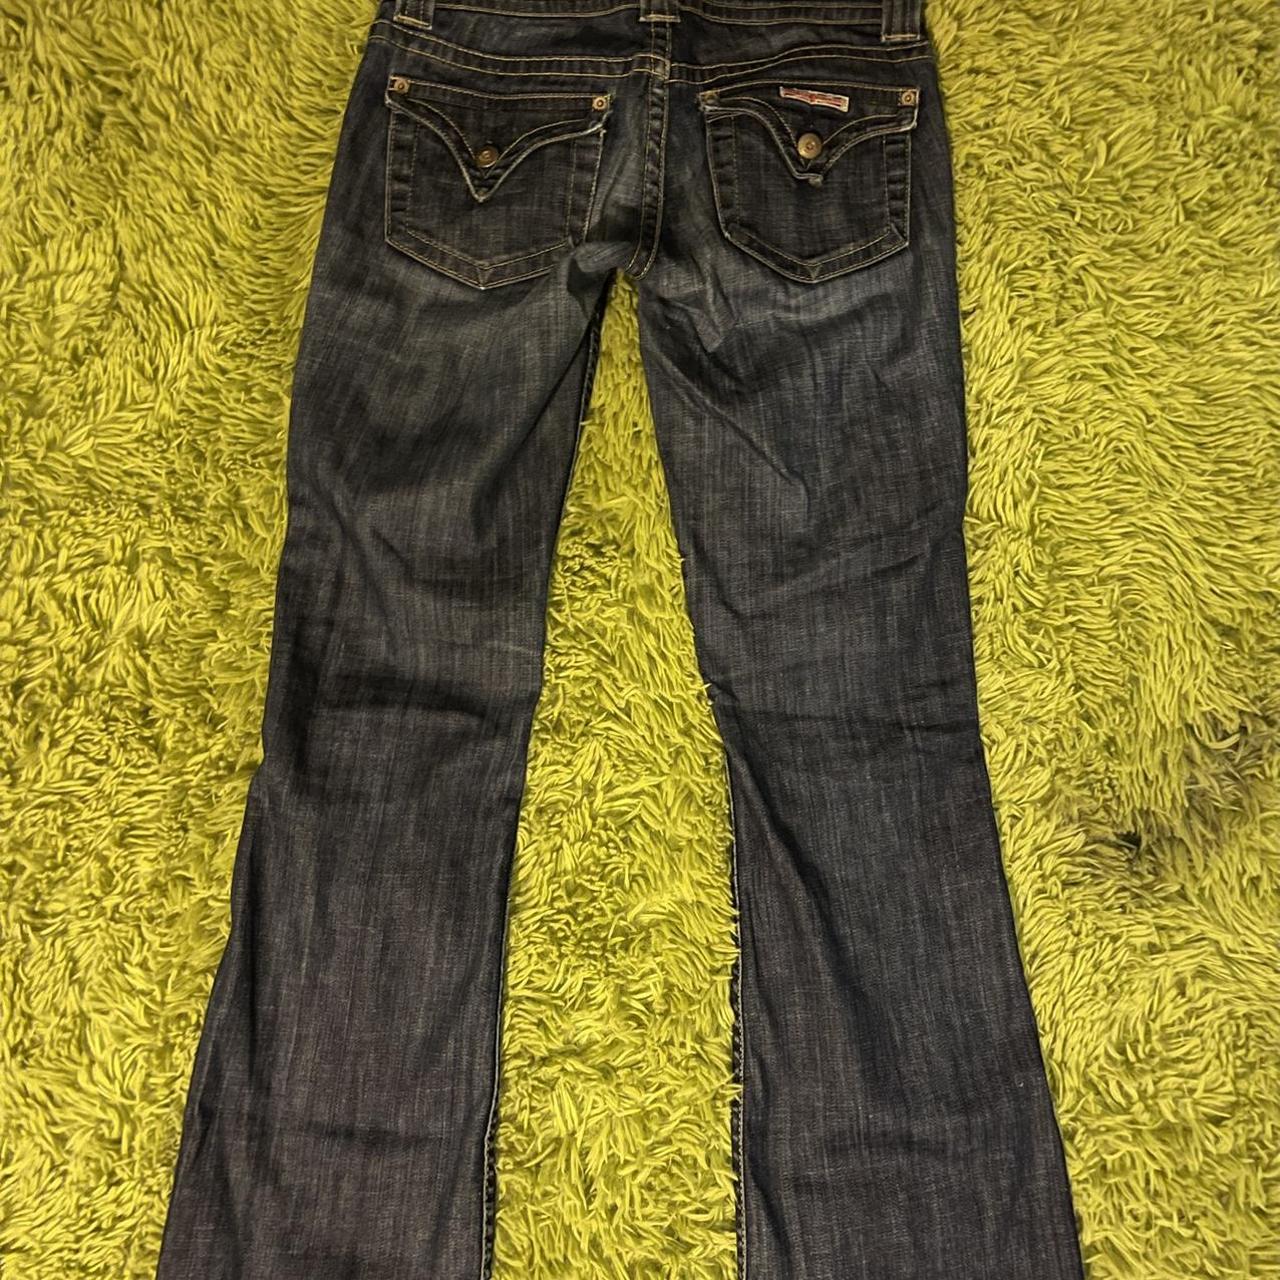 Vintage Flared Hudson Jeans Size 2 I’m 5’2 and... - Depop